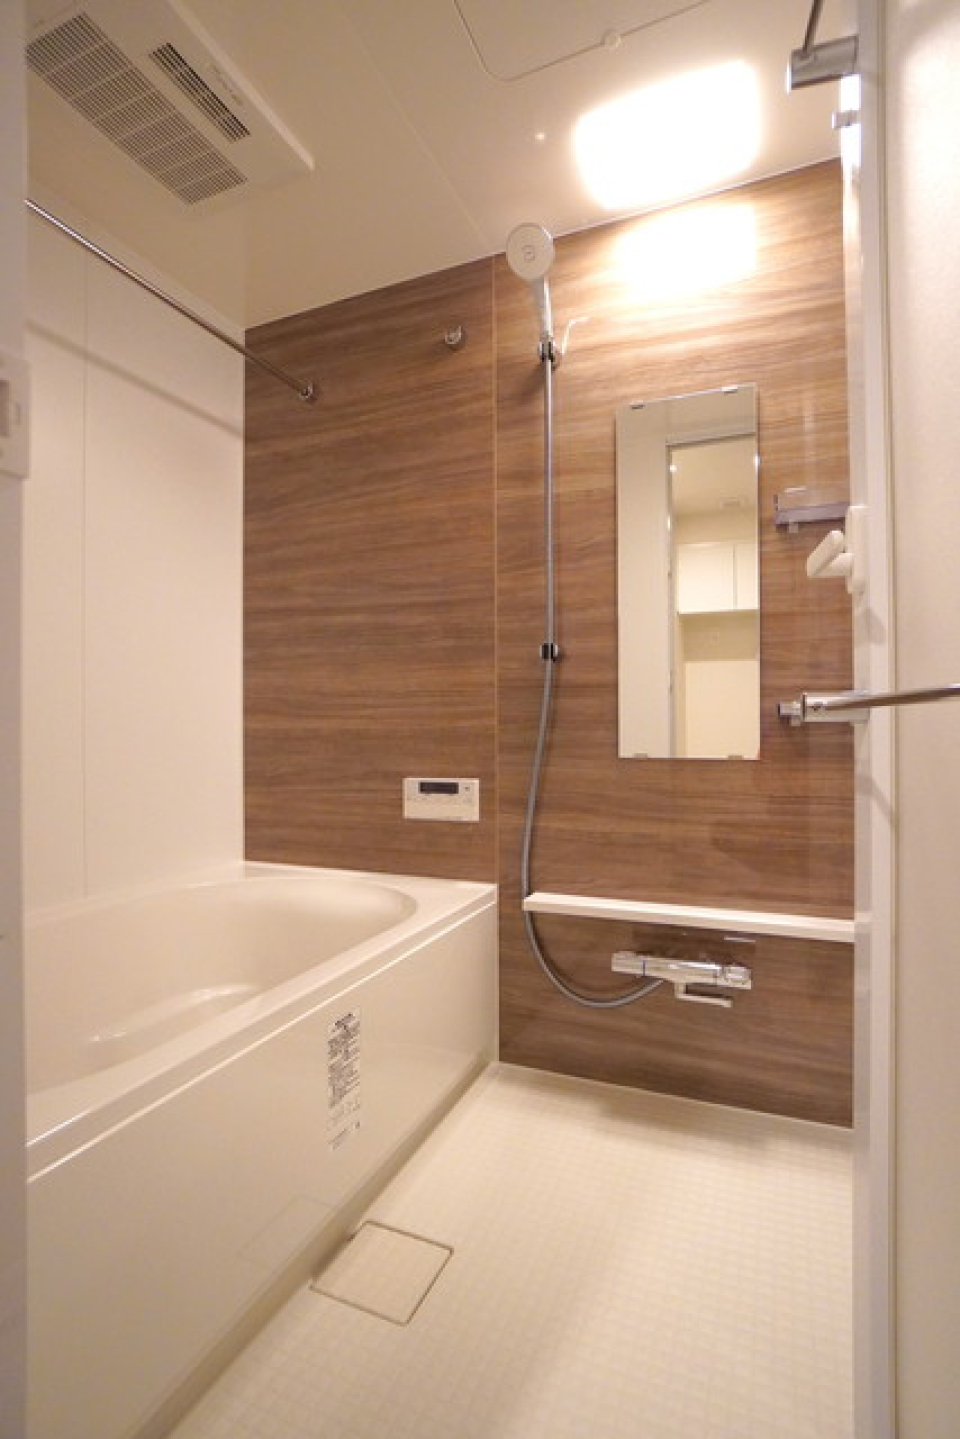 木目調のパネルが導入されている浴室です。※写真は同タイプ住戸です。